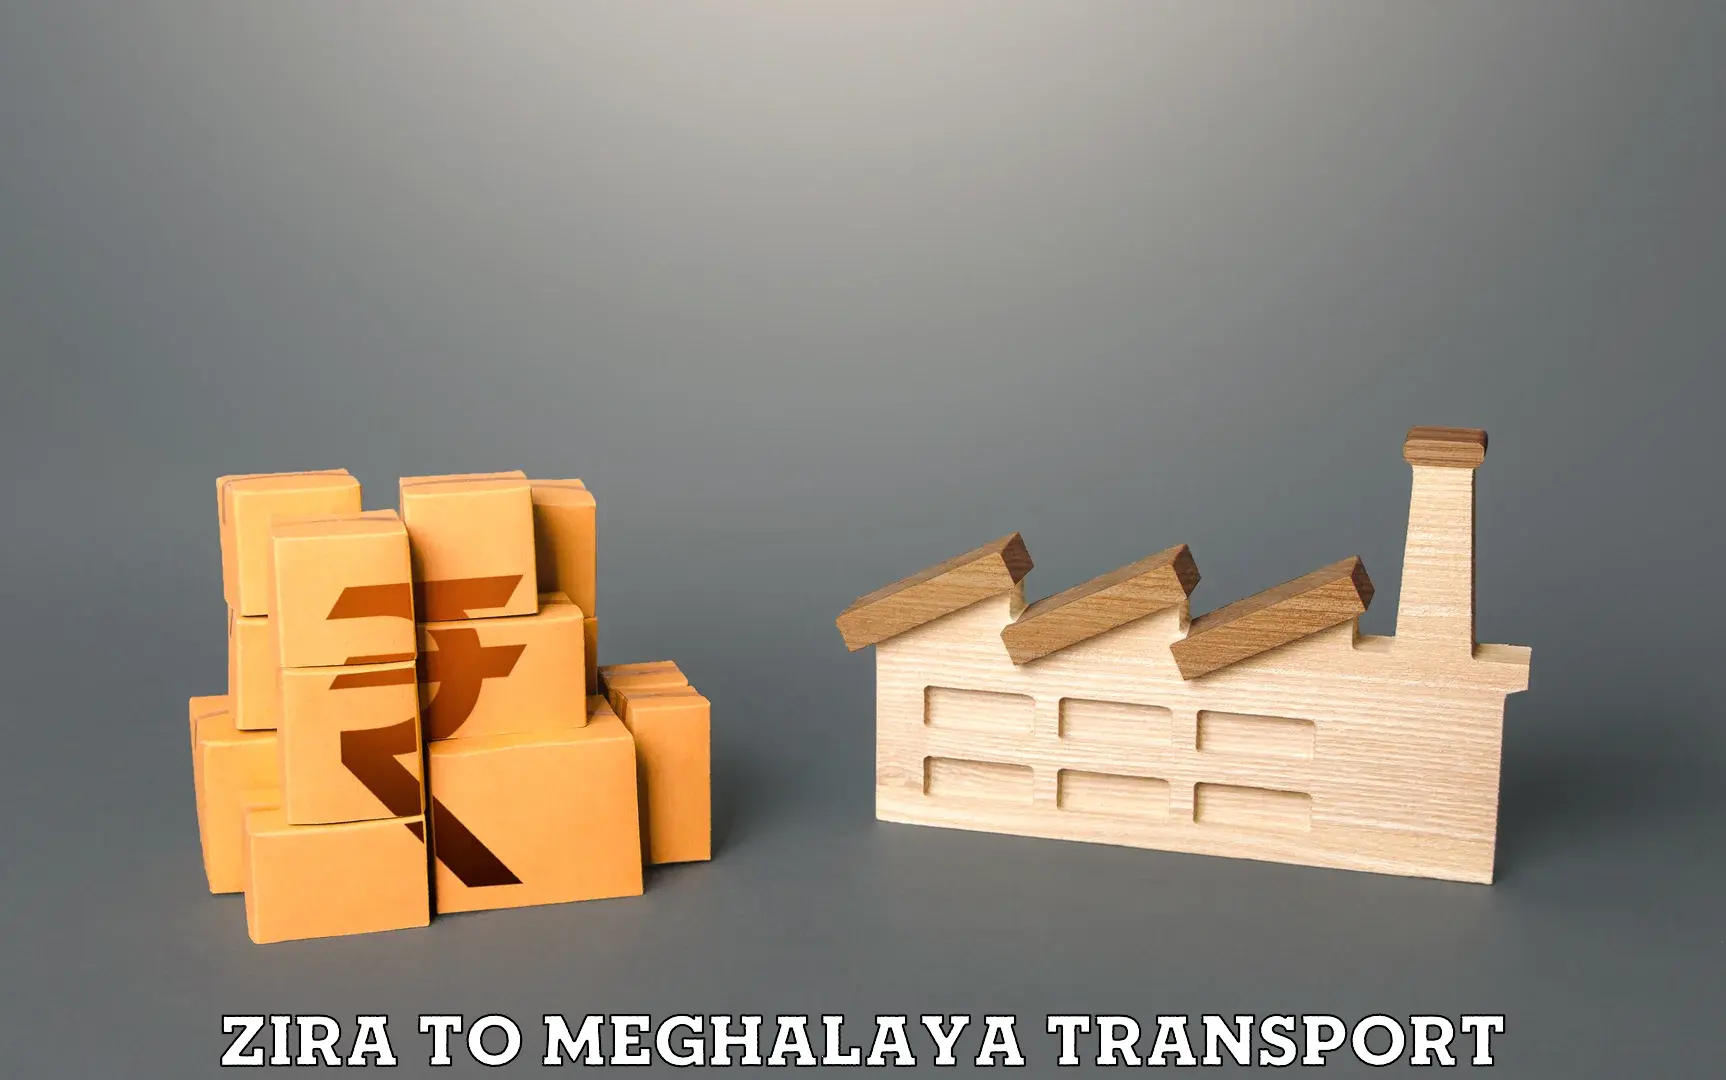 Transport in sharing in Zira to Phulbari